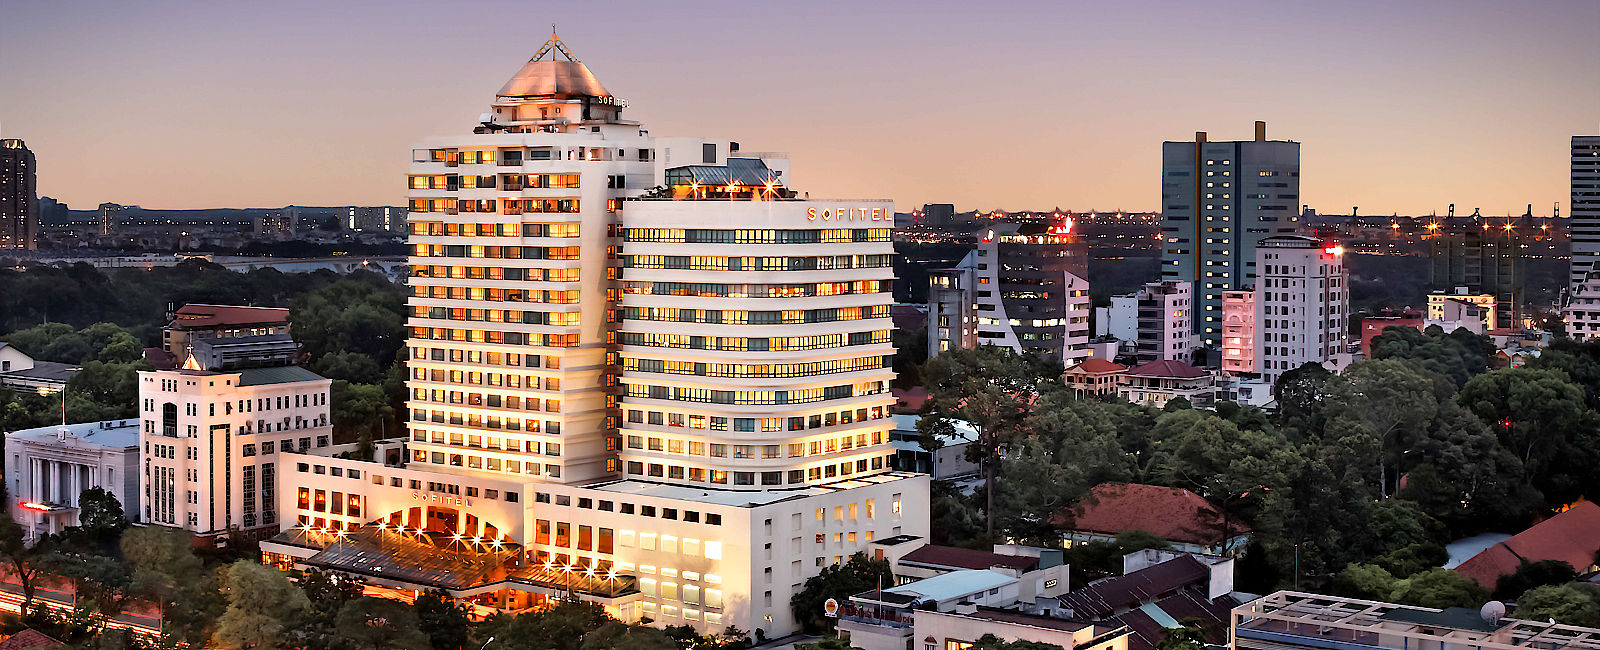 HOTELTEST
 Sofitel Saigon Plaza 
 Durchdachter Luxus 